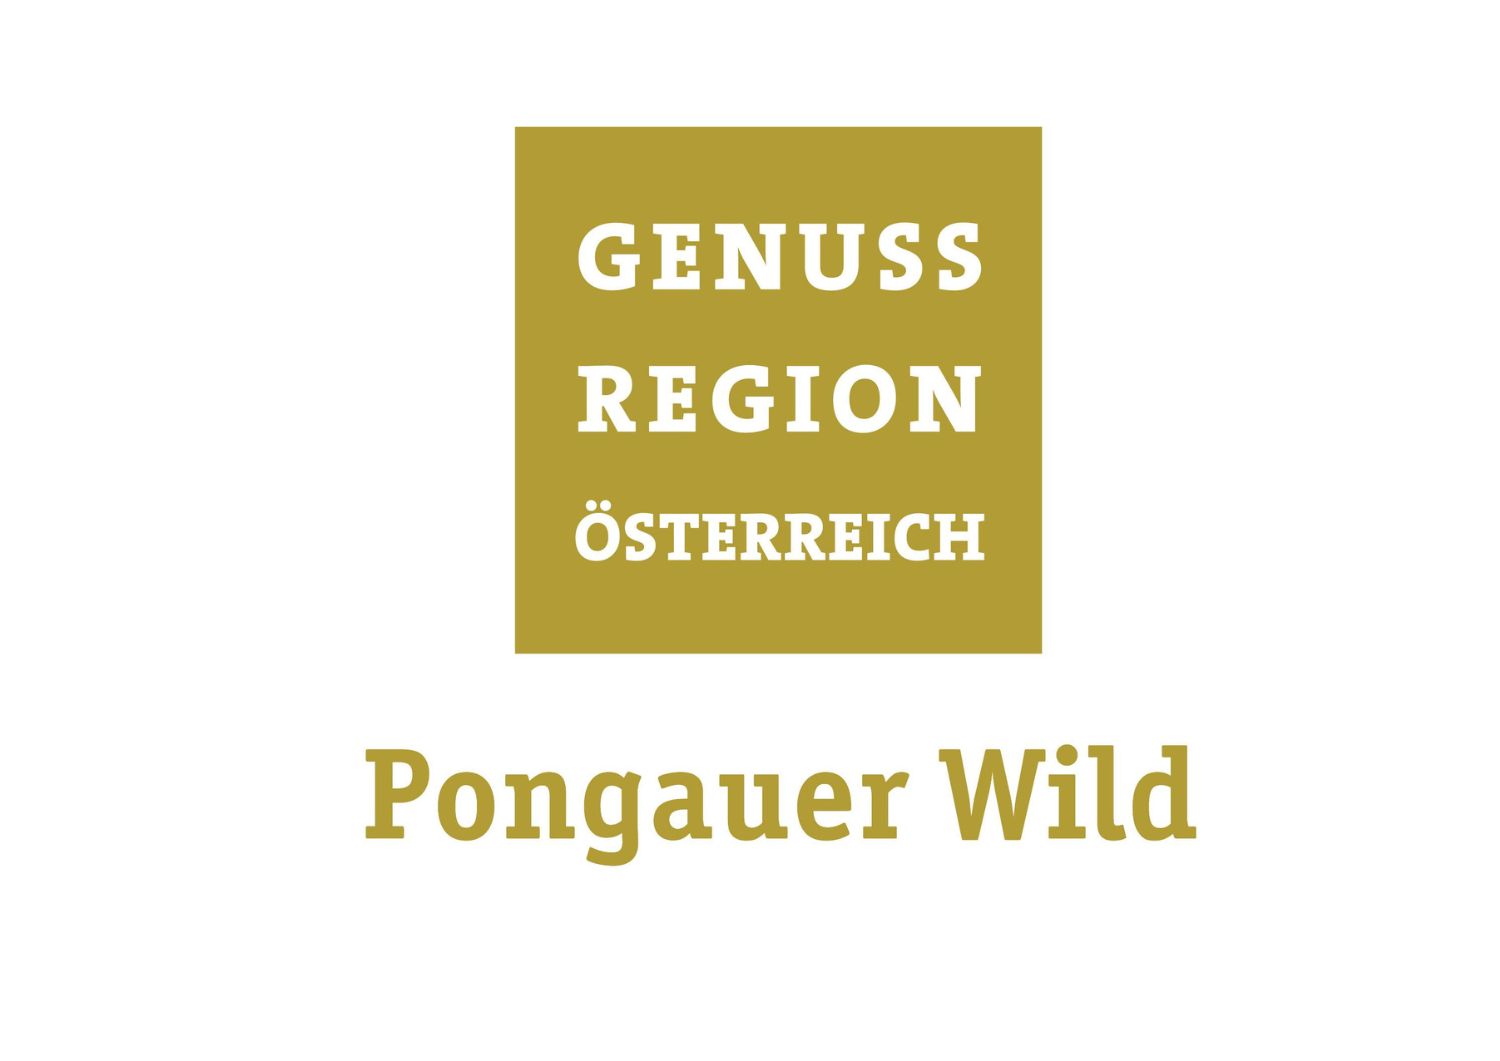 Logo Genussregion Pongauer Wild min  © Genussregion Pongauer